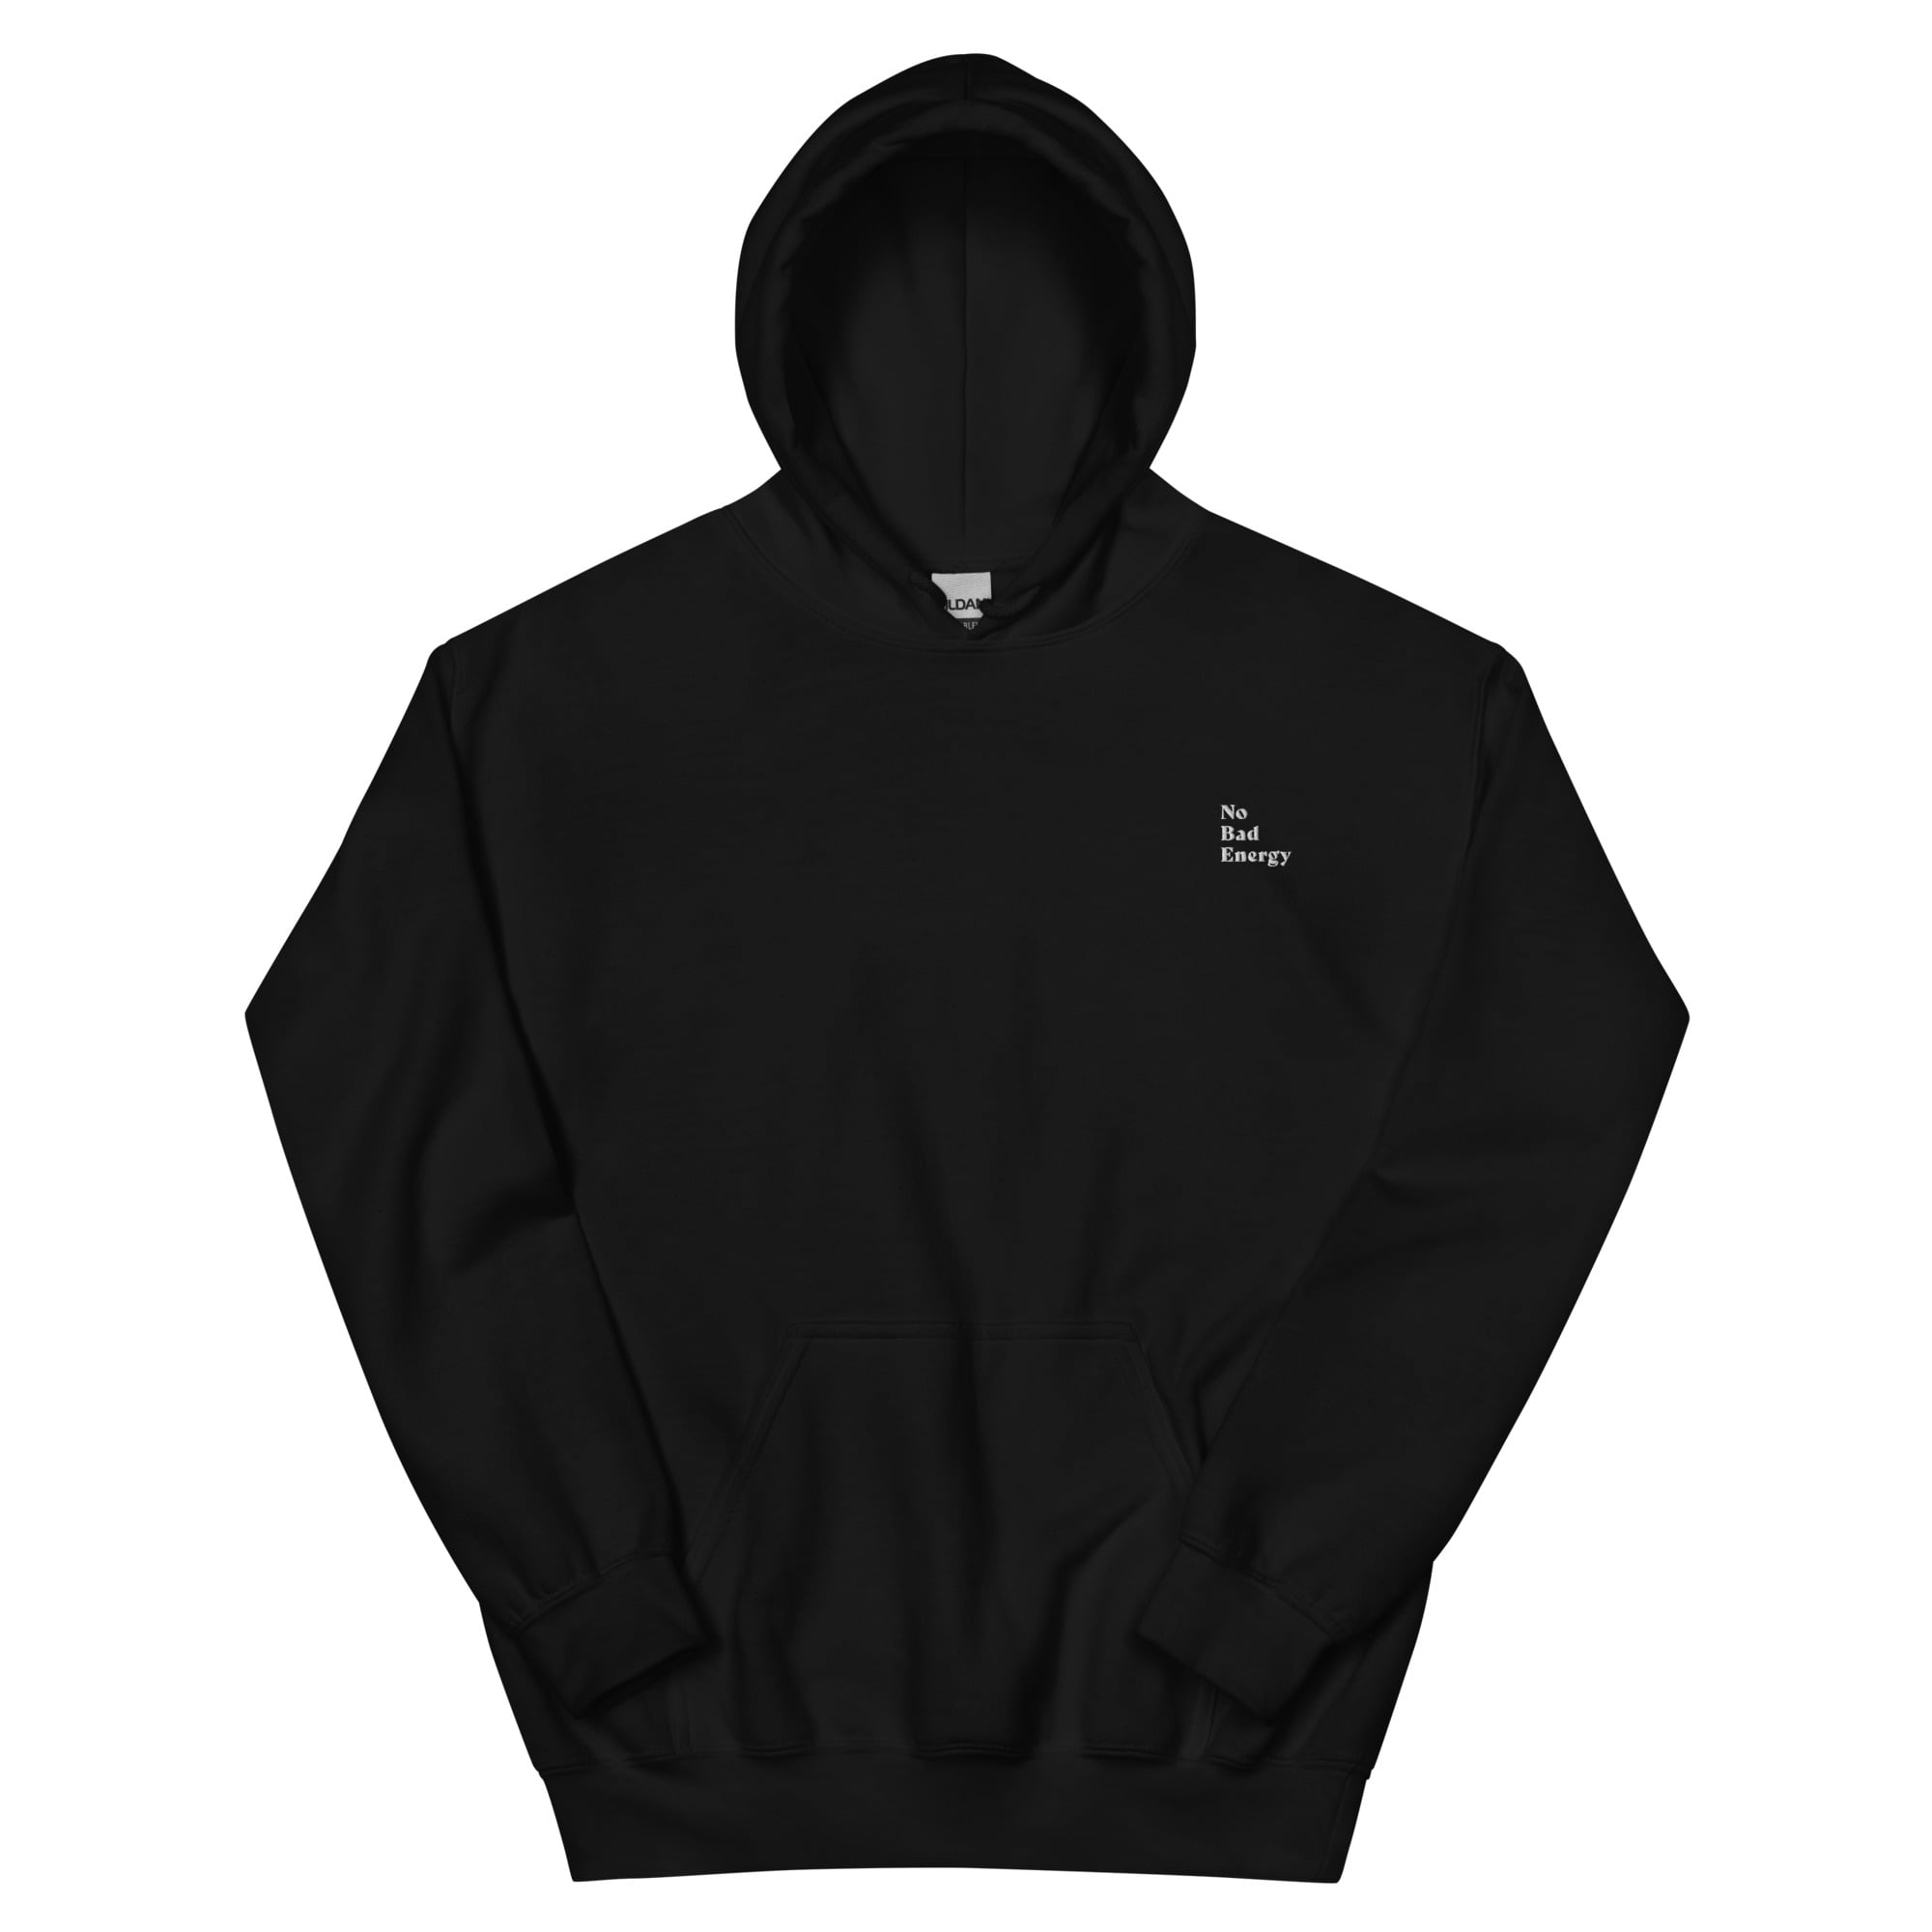 unisex heavy blend hoodie black front 653b73fd1de89.jpg